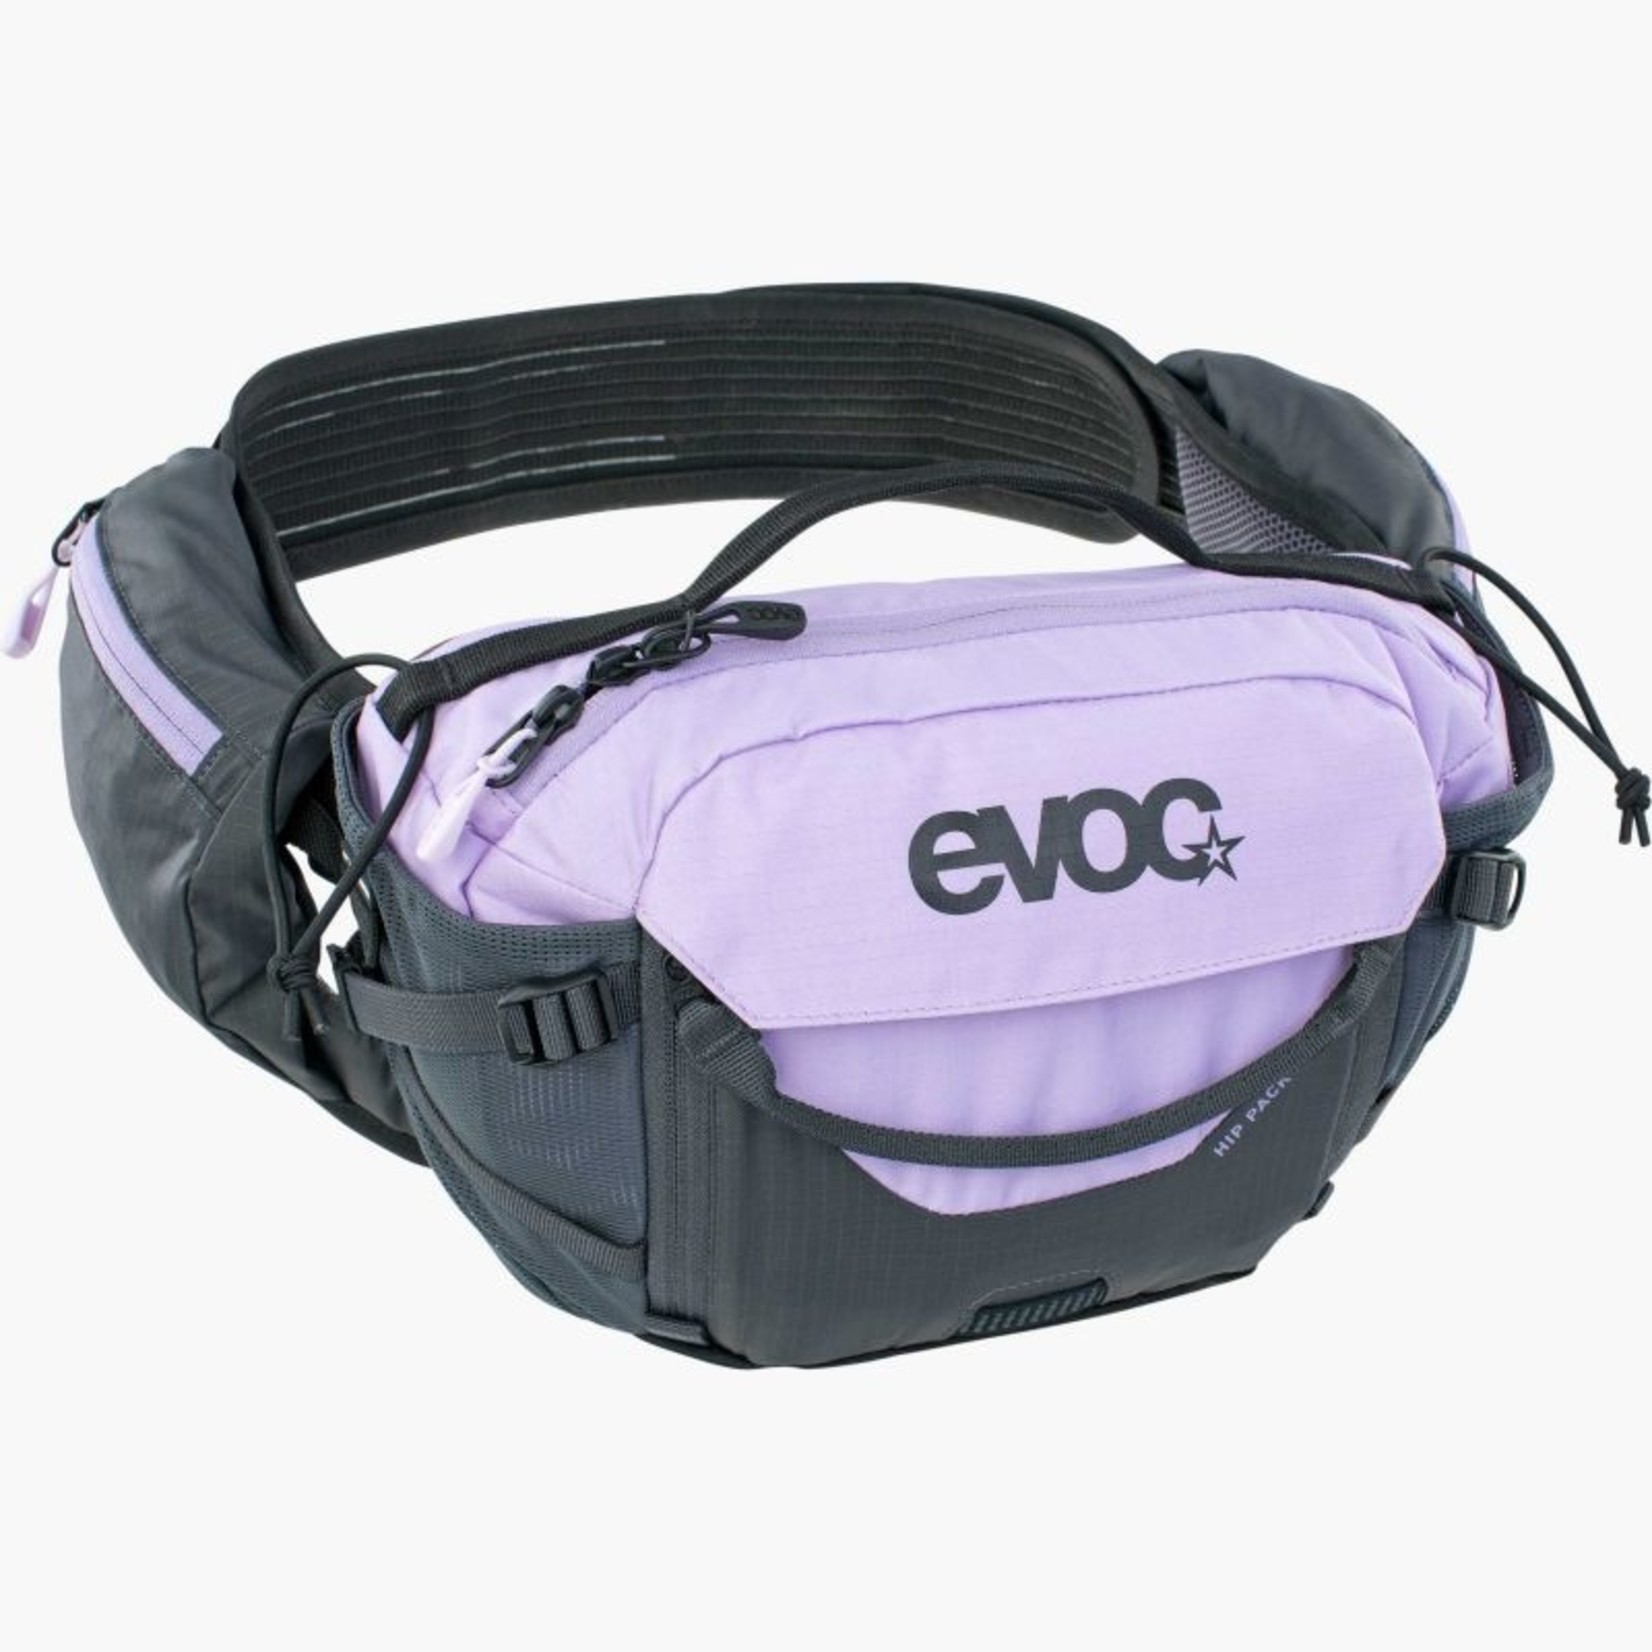 EVOC Hip Pack Pro 3L